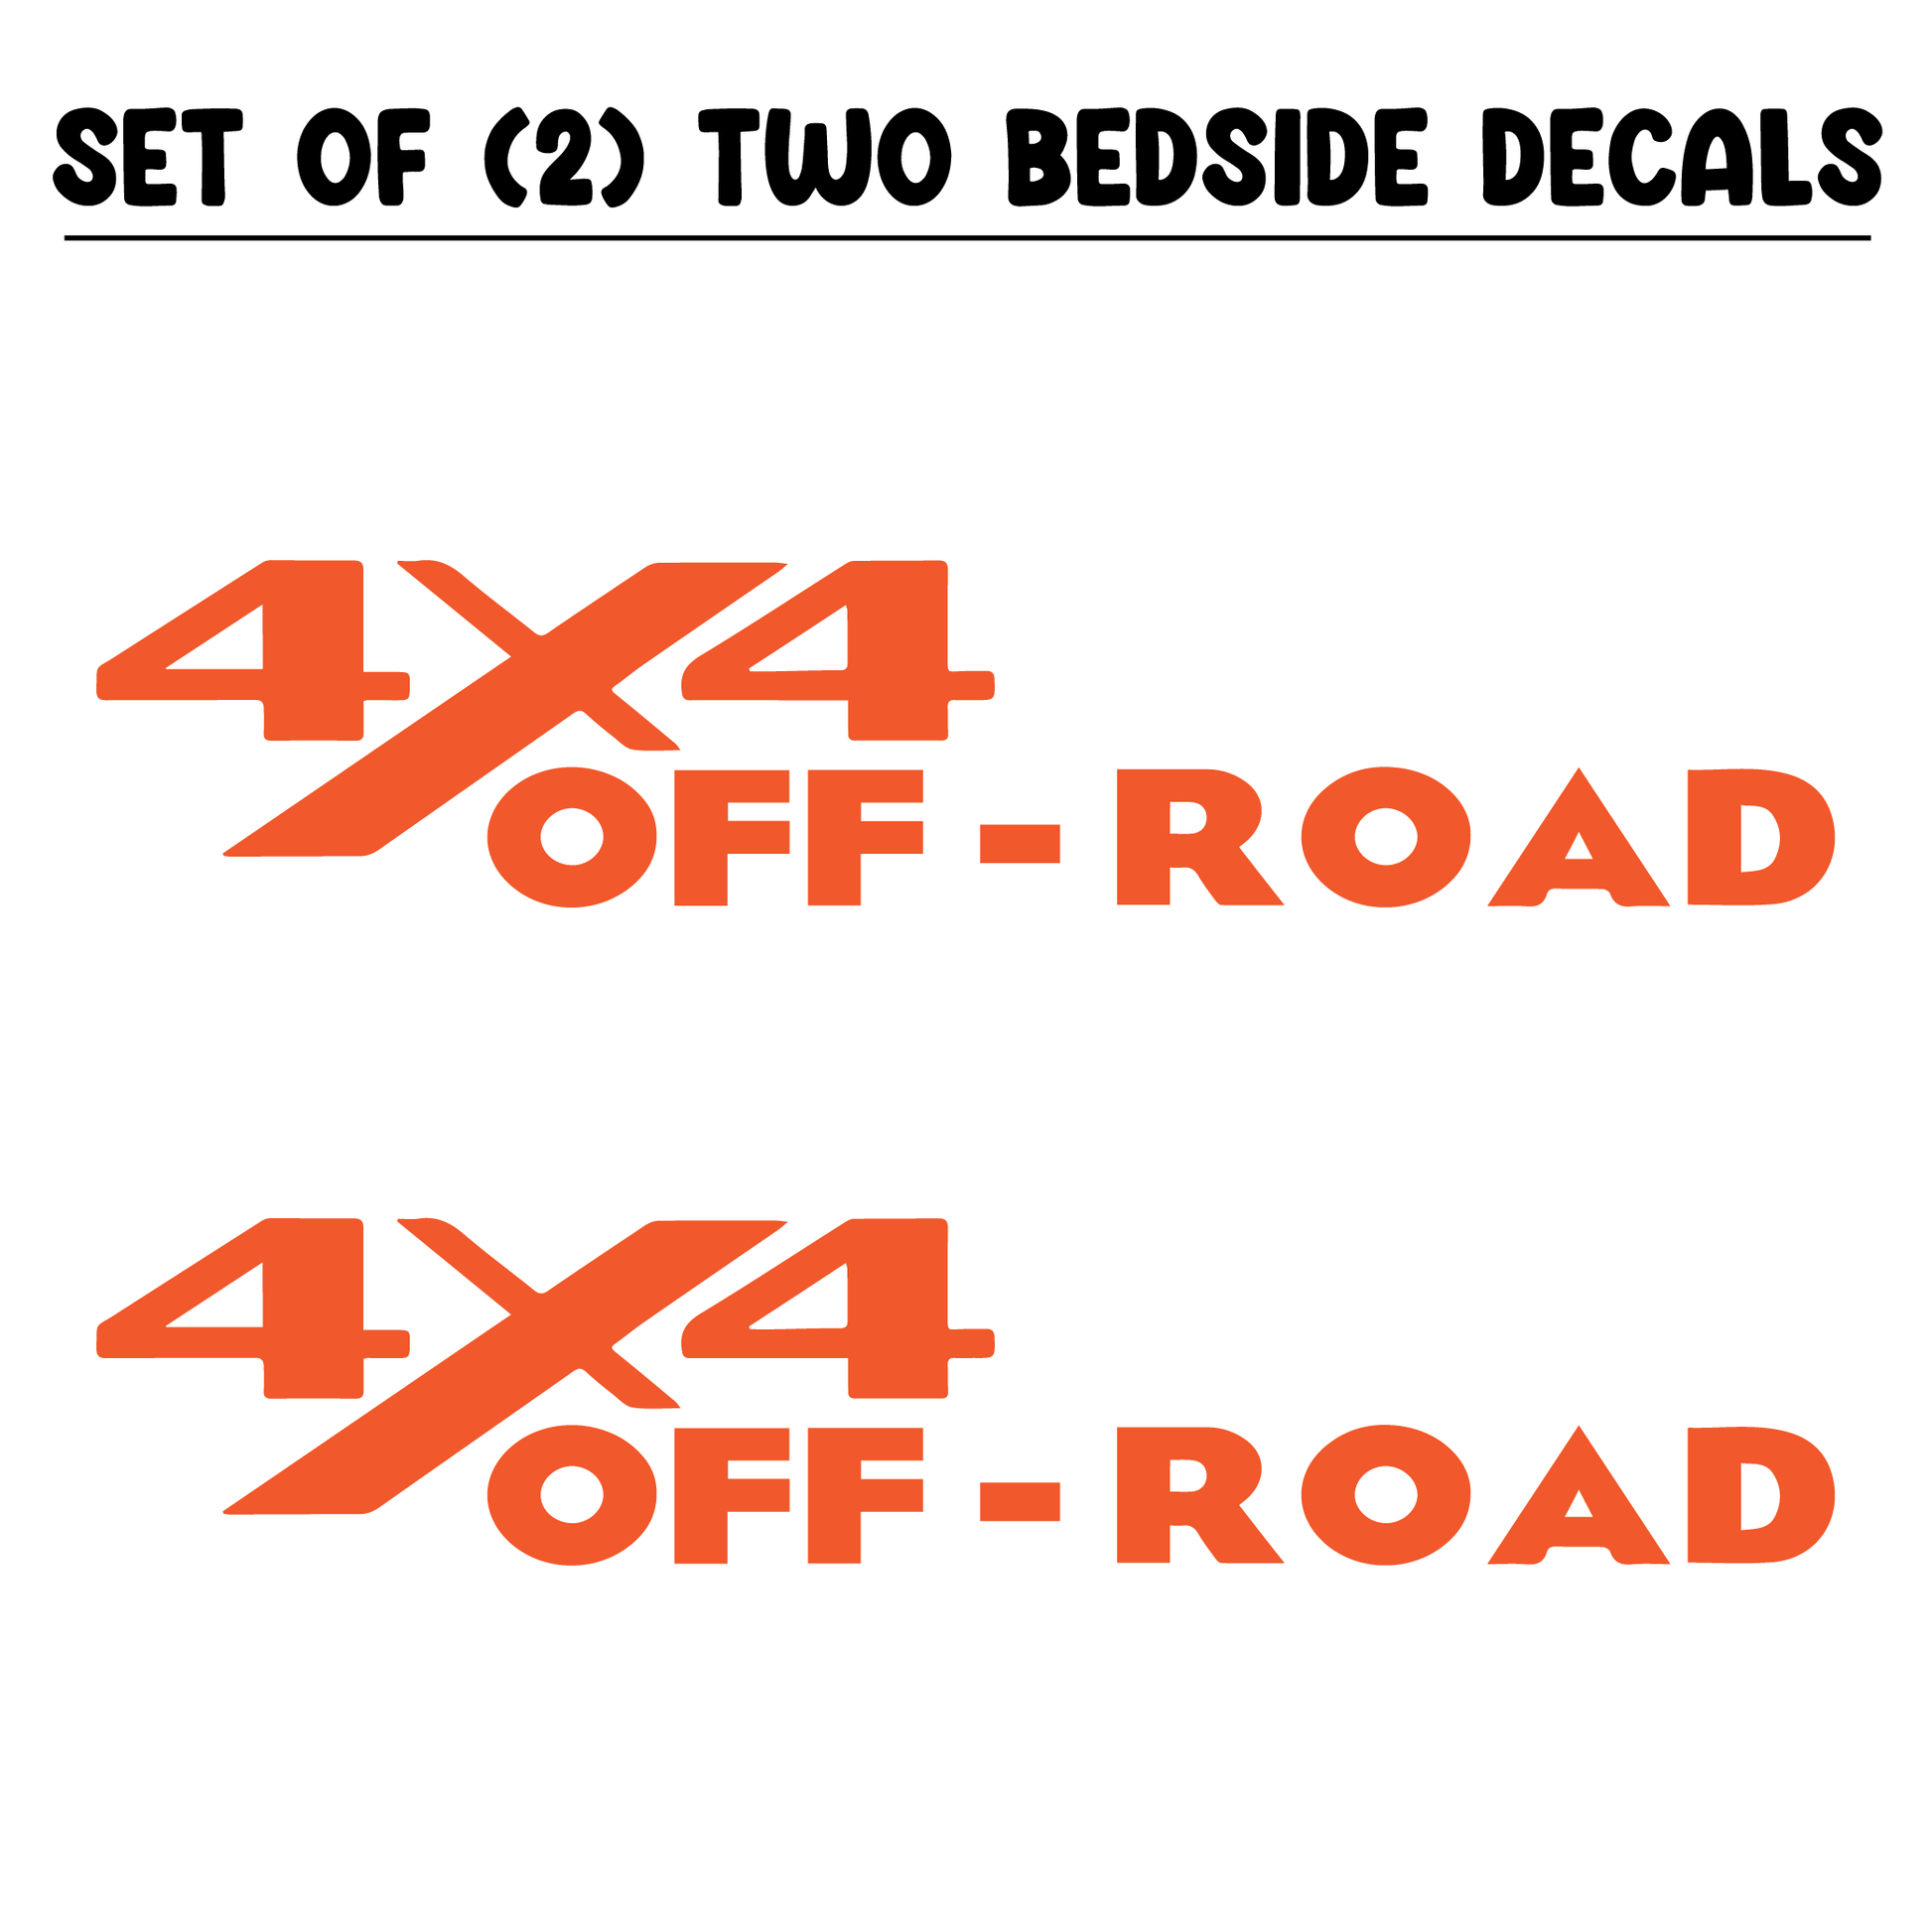 Shop Vinyl Design RAM Trucks 4 x 4 Off Road Replacement Bedside Decals #13 Vehicle 001 Orange Gloss Shop Vinyl Design decals stickers